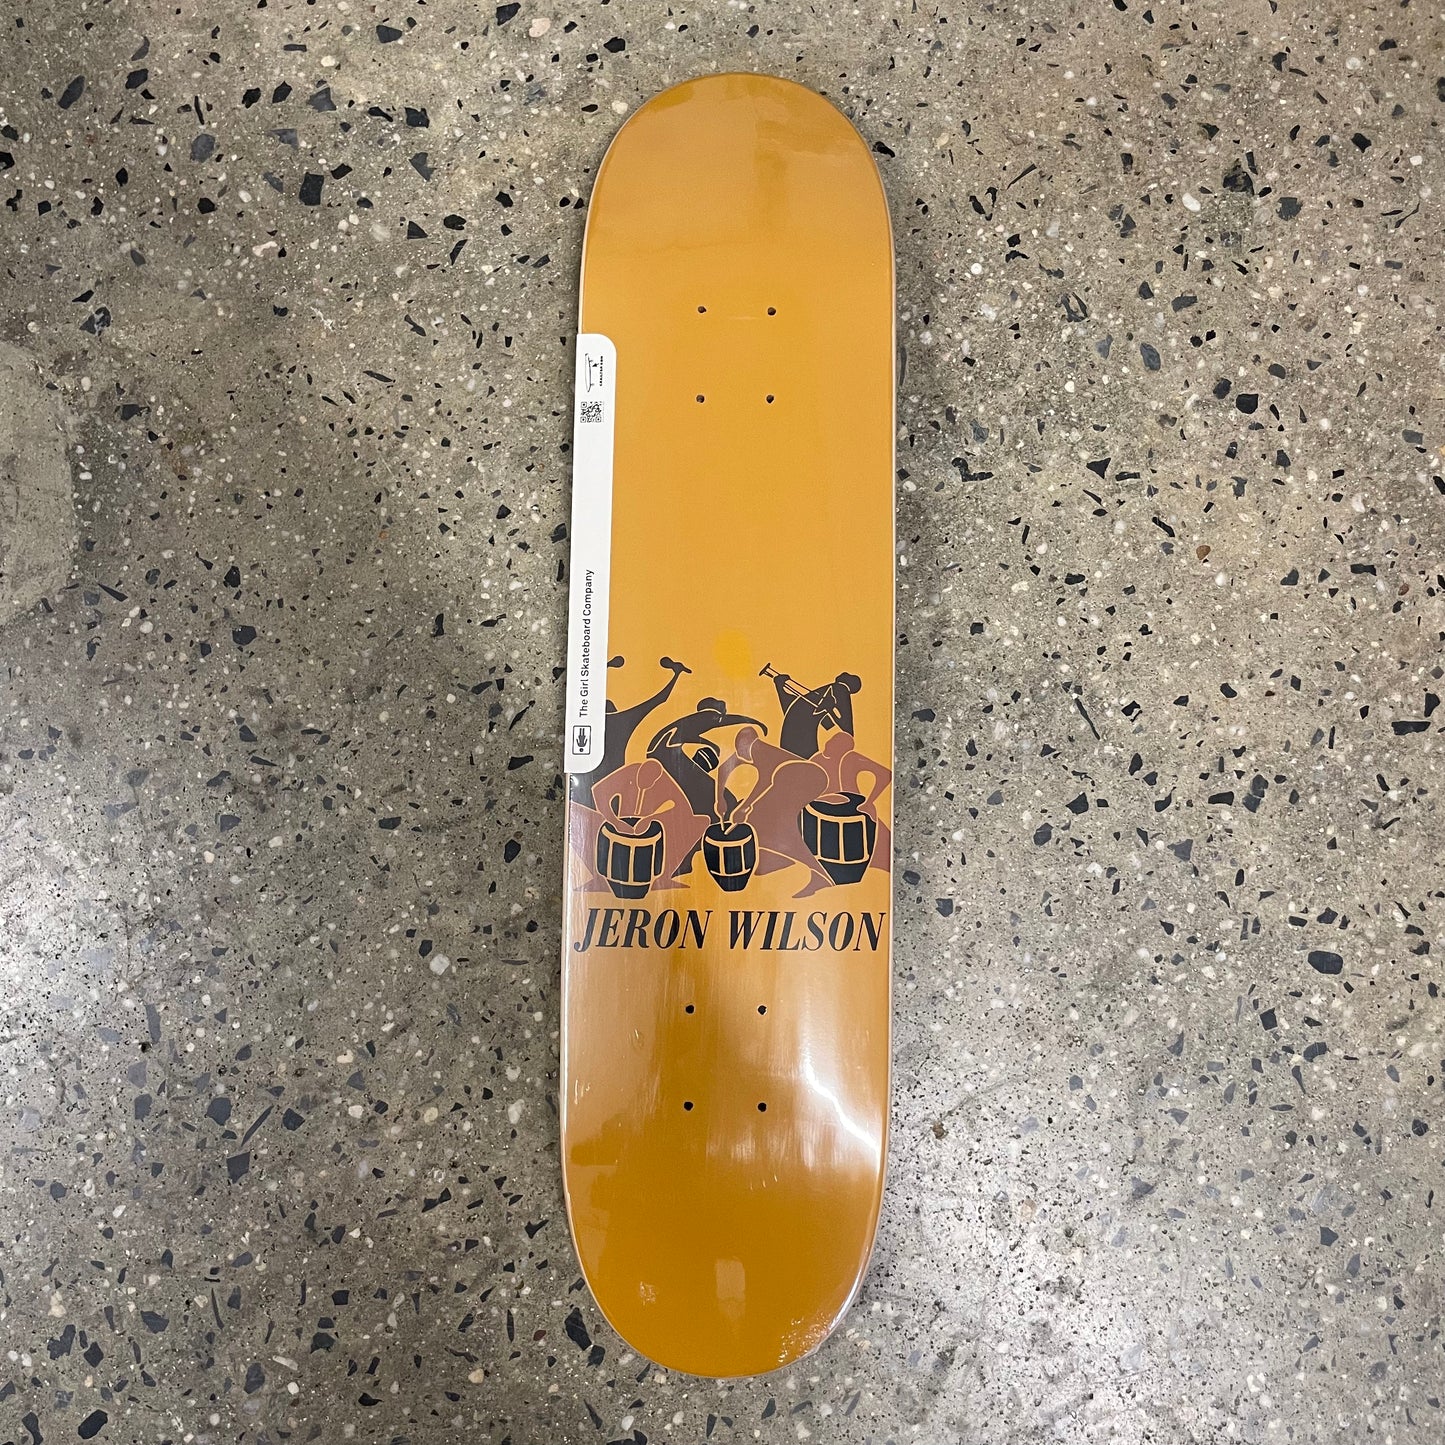 Girl Jeron Wilson Music Reissue Skateboard Deck